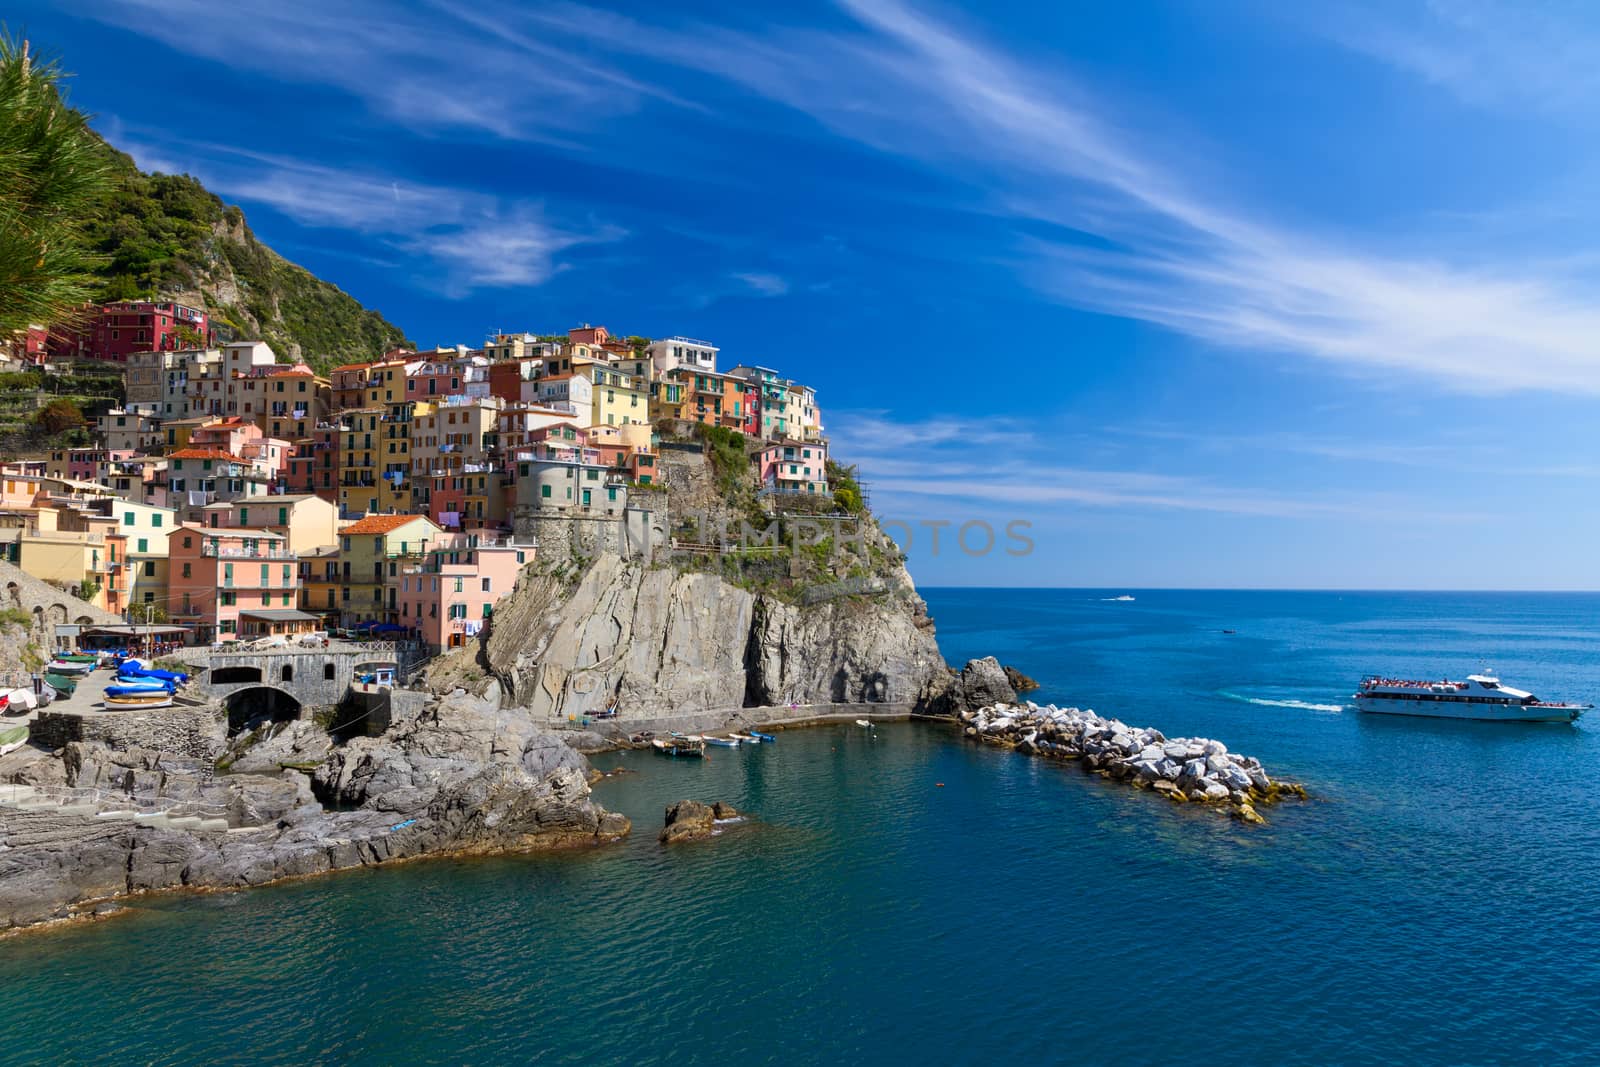 Village of Manarola with ferry, Cinque Terre, Italy by fisfra